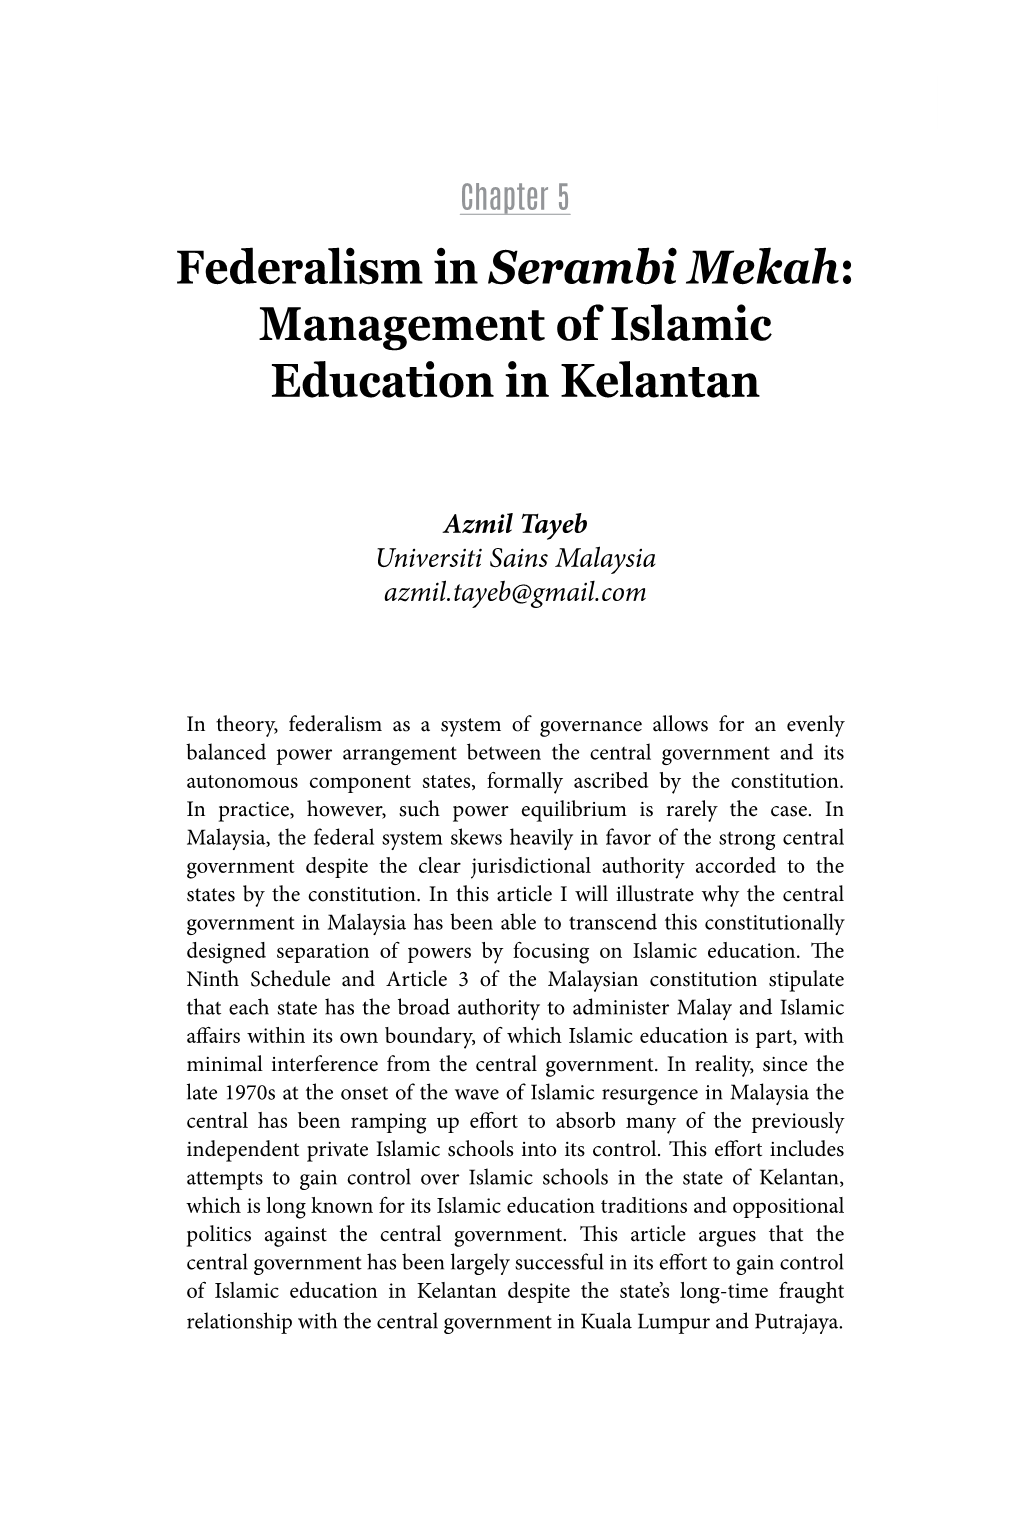 Management of Islamic Education in Kelantan